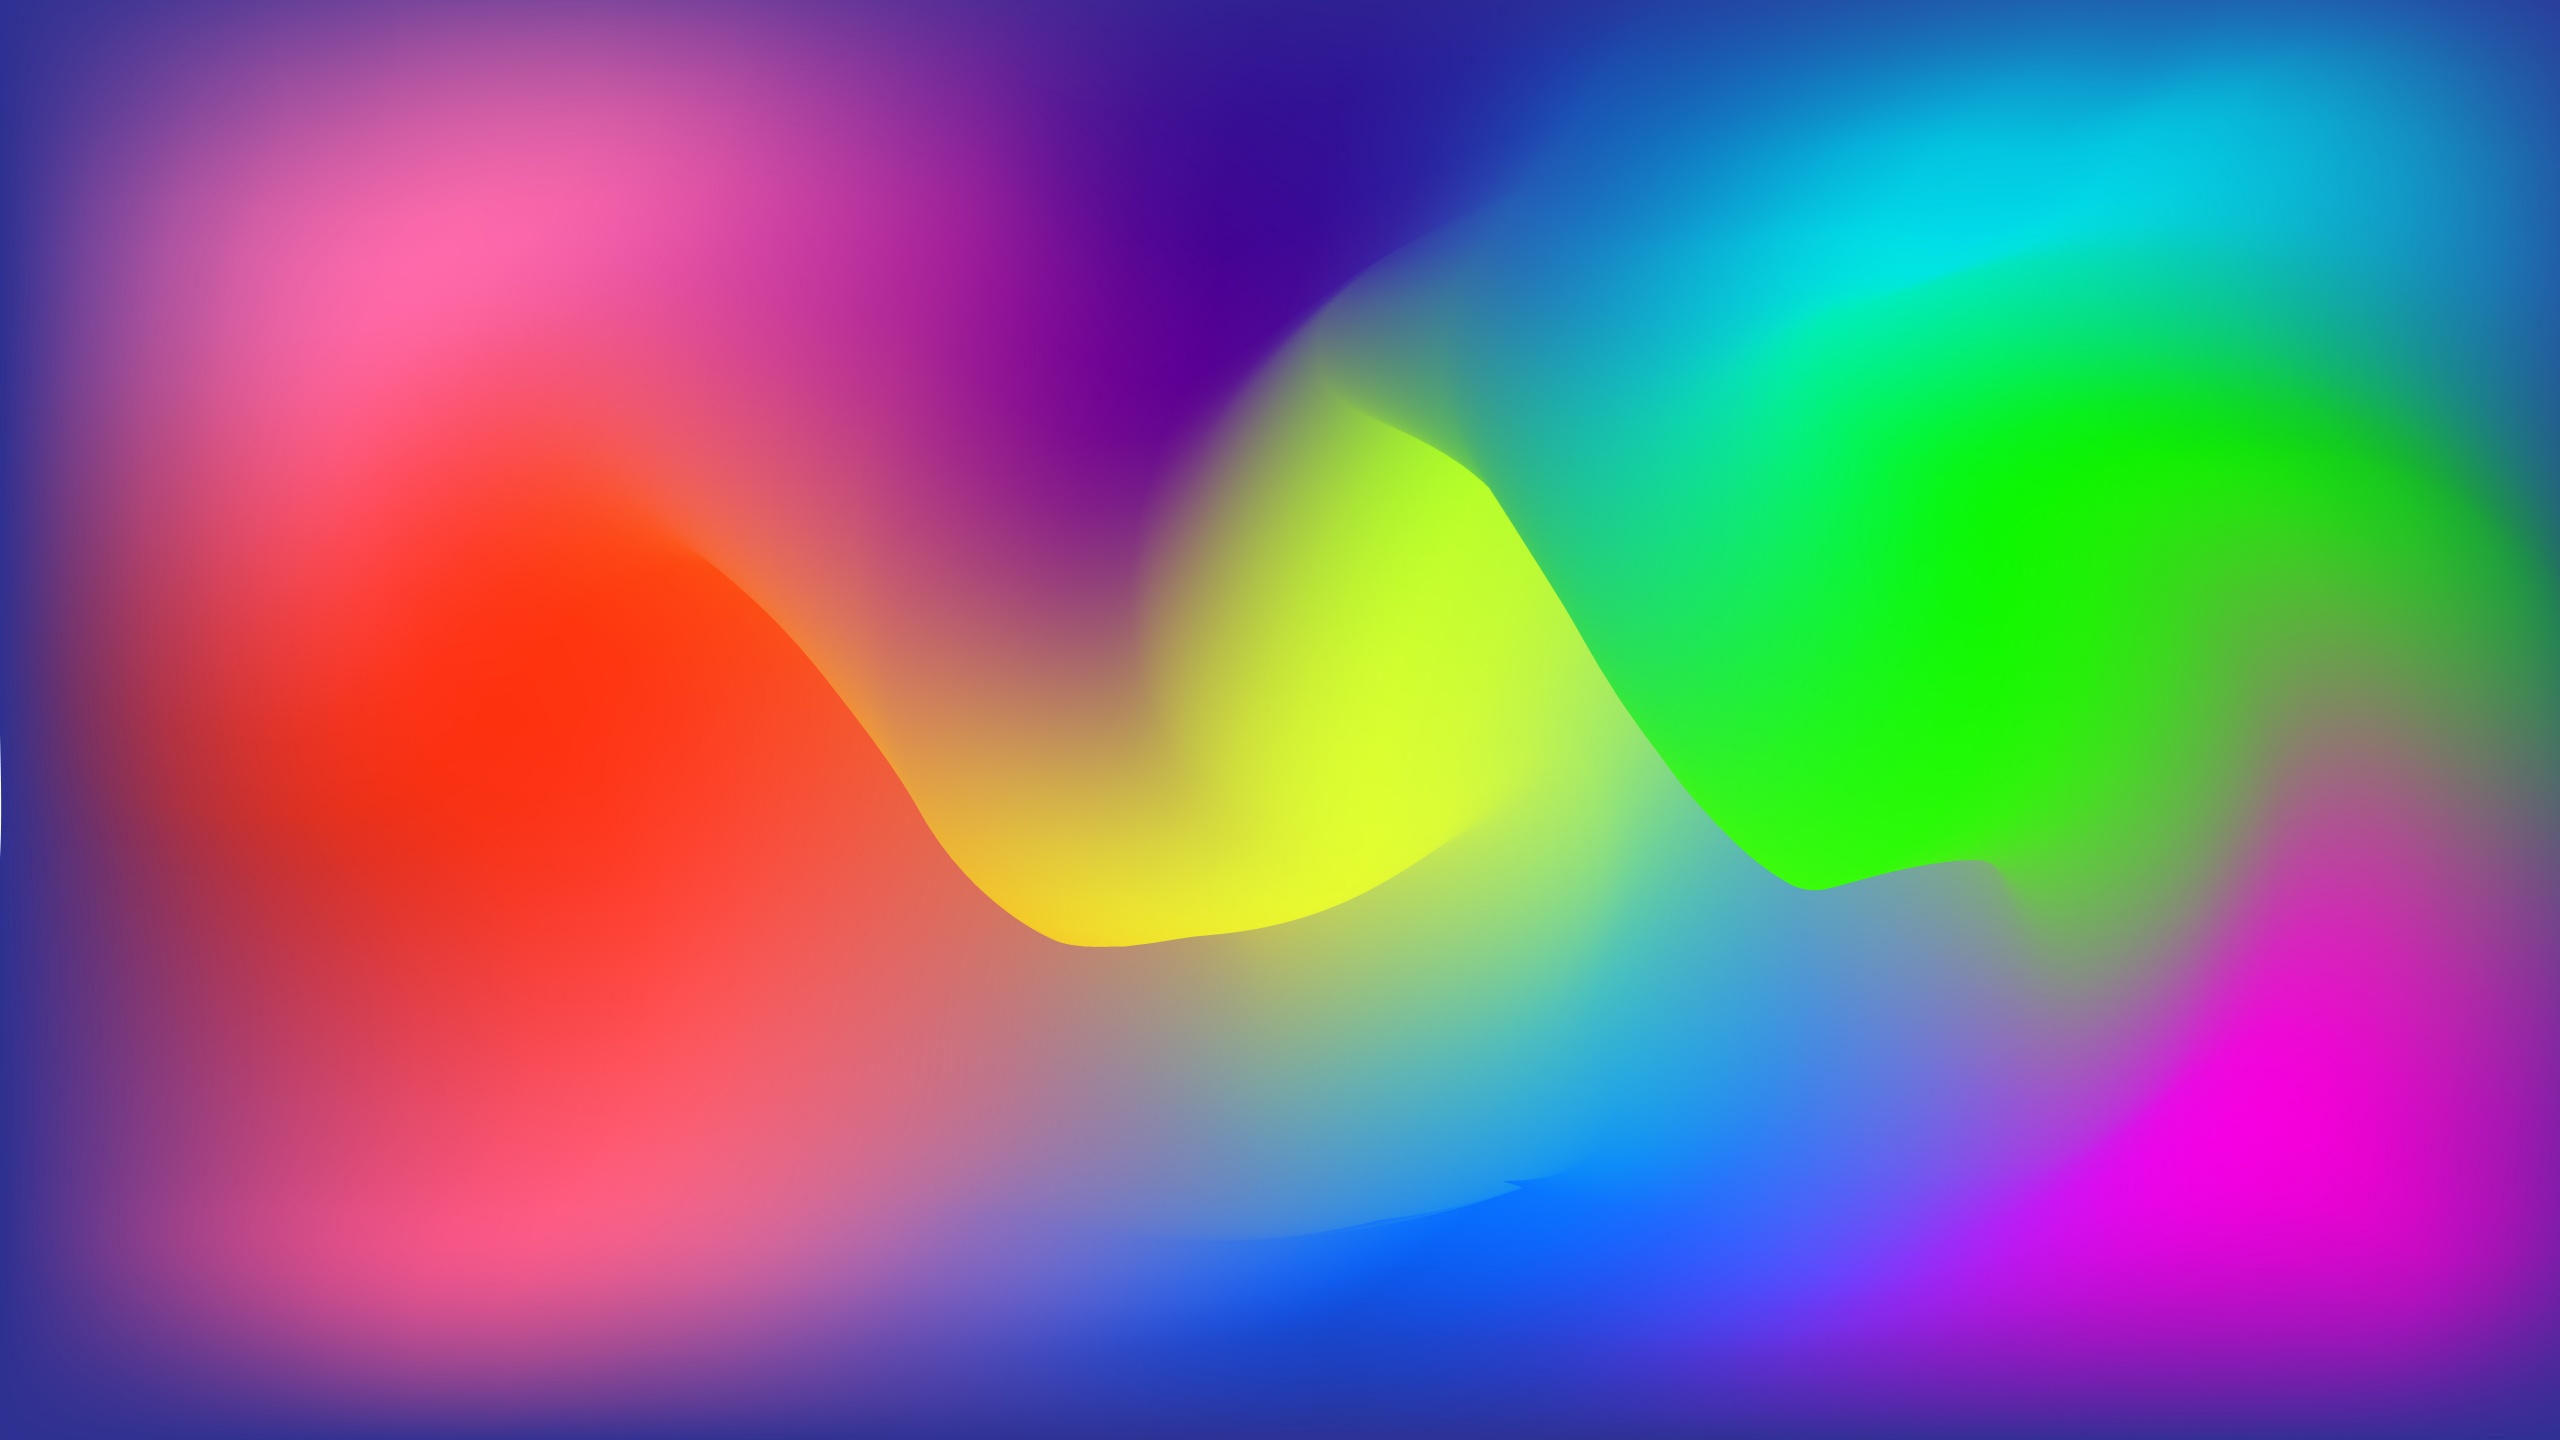 Hình nền màu sắc: Hình nền màu sắc sẽ giúp cho bạn tạo ra sự sinh động và tươi mới cho chiếc máy tính của mình. Được trang trí bằng các màu sắc tươi sáng và pha trộn, hình nền này không chỉ tạo cảm giác tươi mới cho mắt, mà còn đem lại năng lượng tích cực cho tinh thần của bạn.